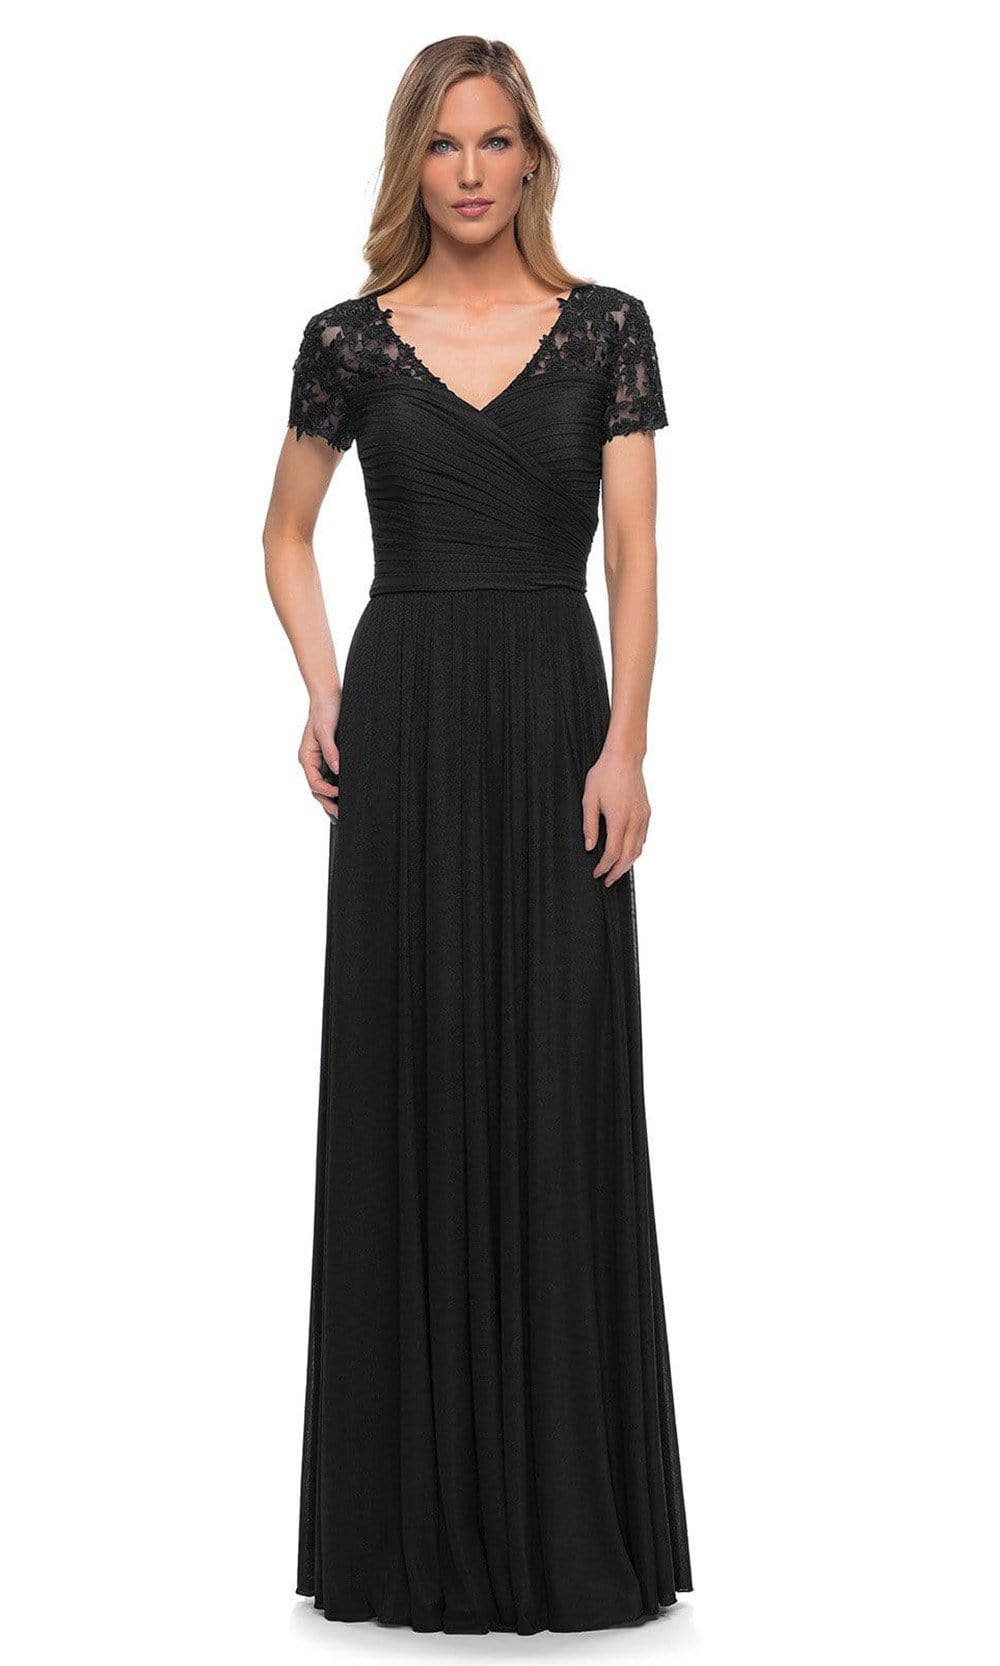 La Femme - 29772 V-Neck Ruched Evening Dress Mother of the Bride Dresses 2 / Black